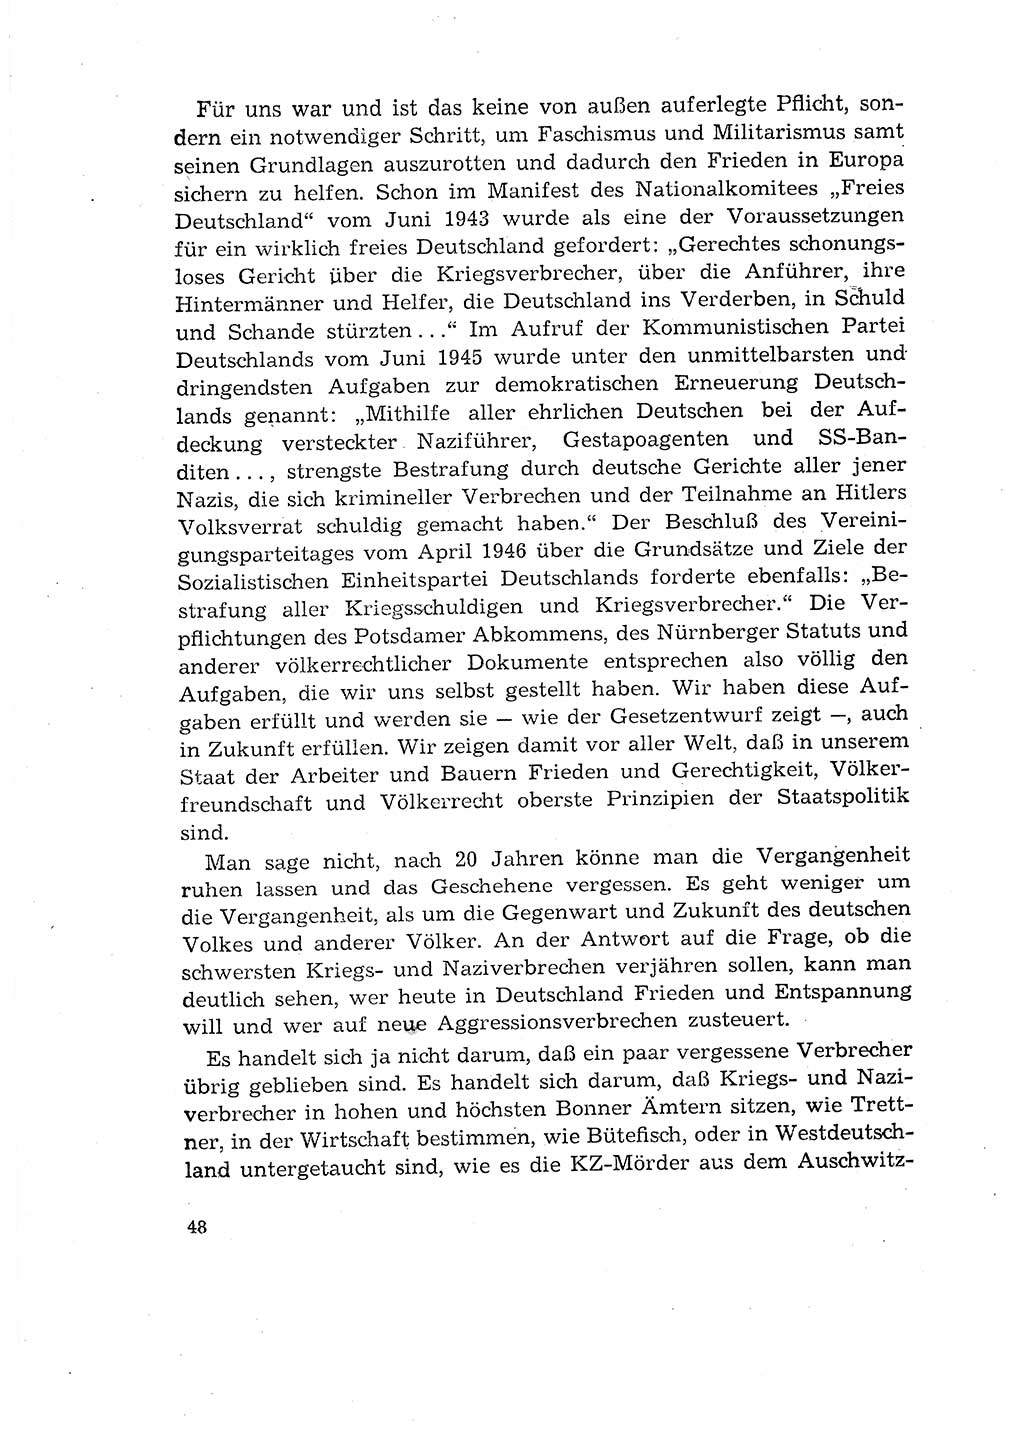 Bestrafung der Nazi- und Kriegsverbrecher [Deutsche Demokratische Republik (DDR)] 1964, Seite 48 (Bestr. Nazi-Kr.-Verbr. DDR 1964, S. 48)